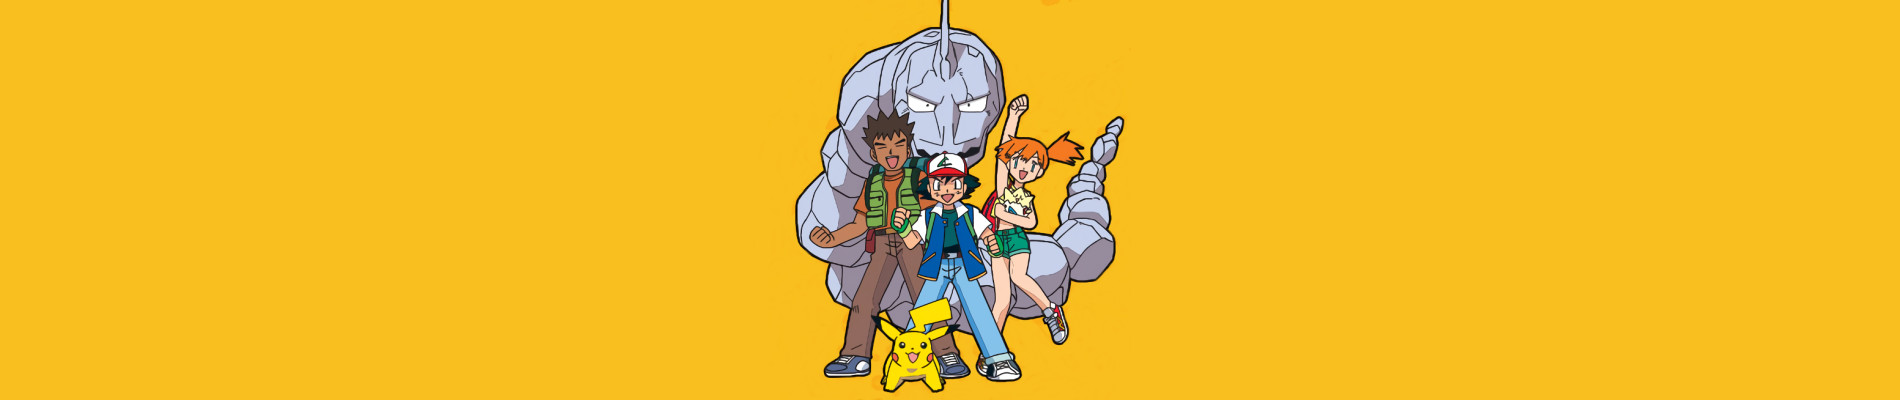 Banner for Pokémon